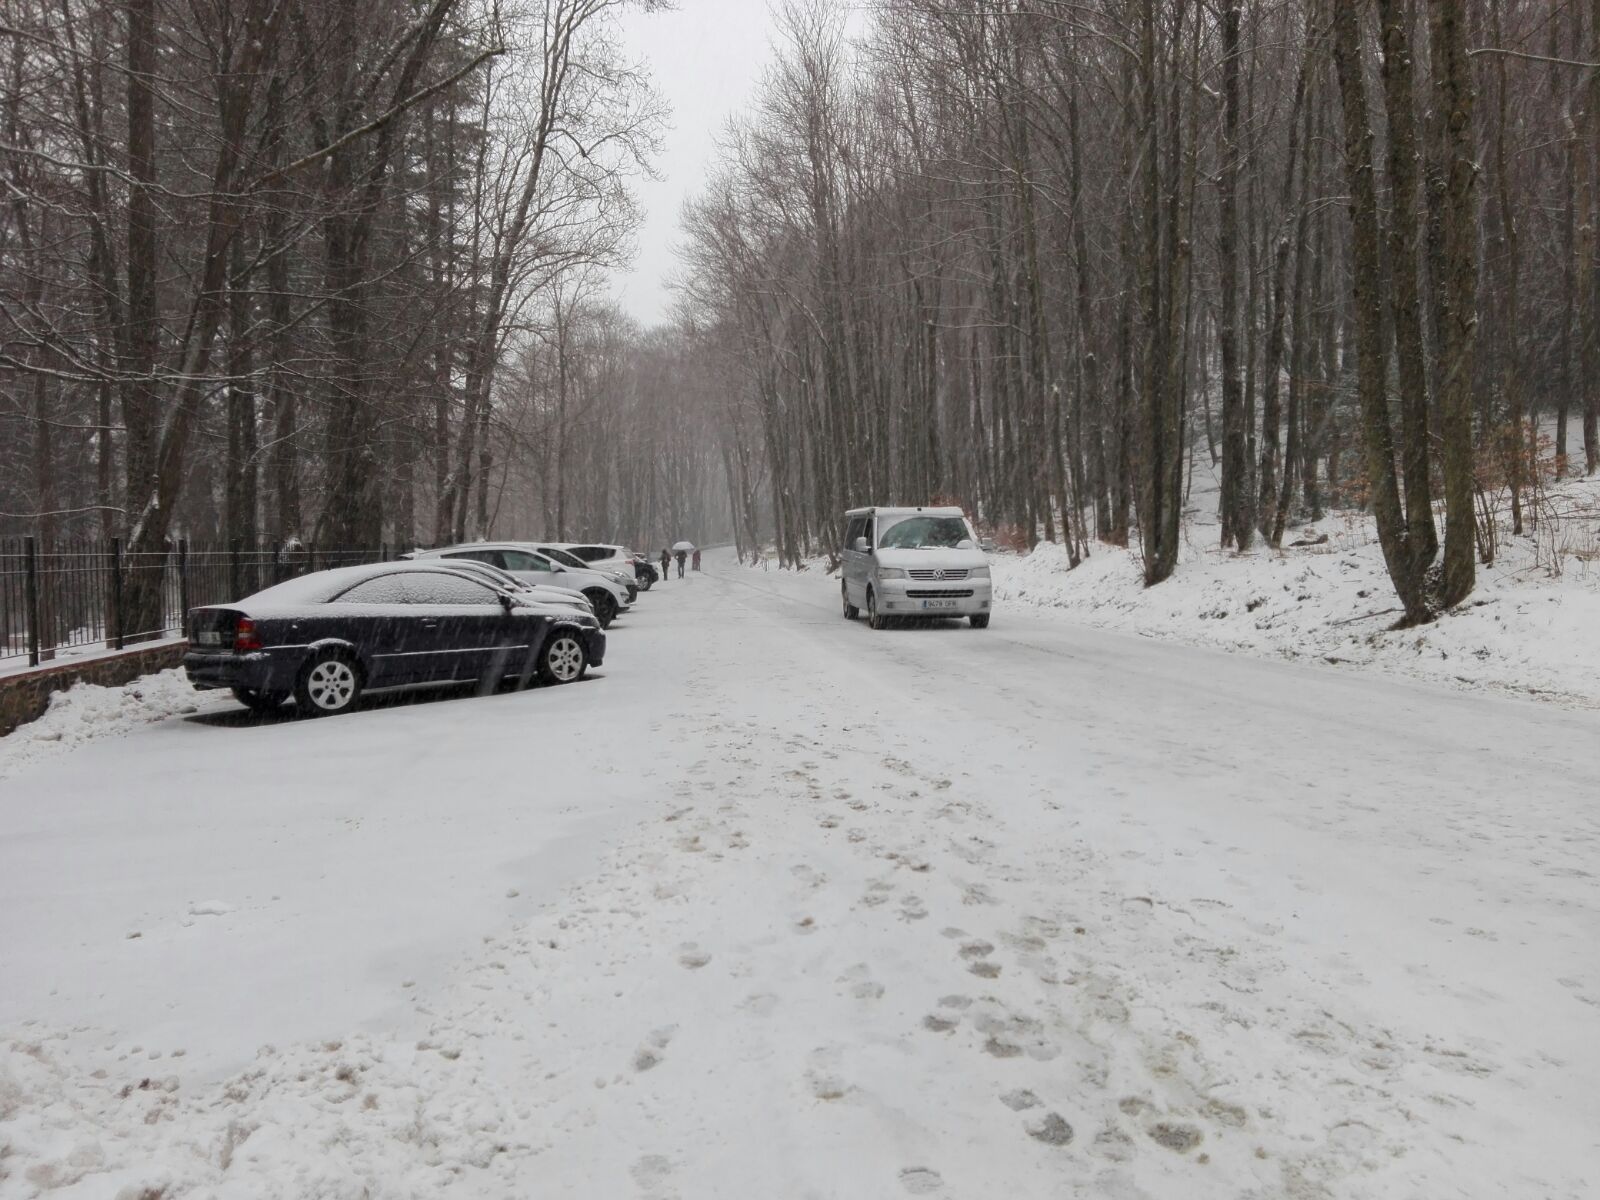 Alerta a les carreteres per una nevada intensa en augment